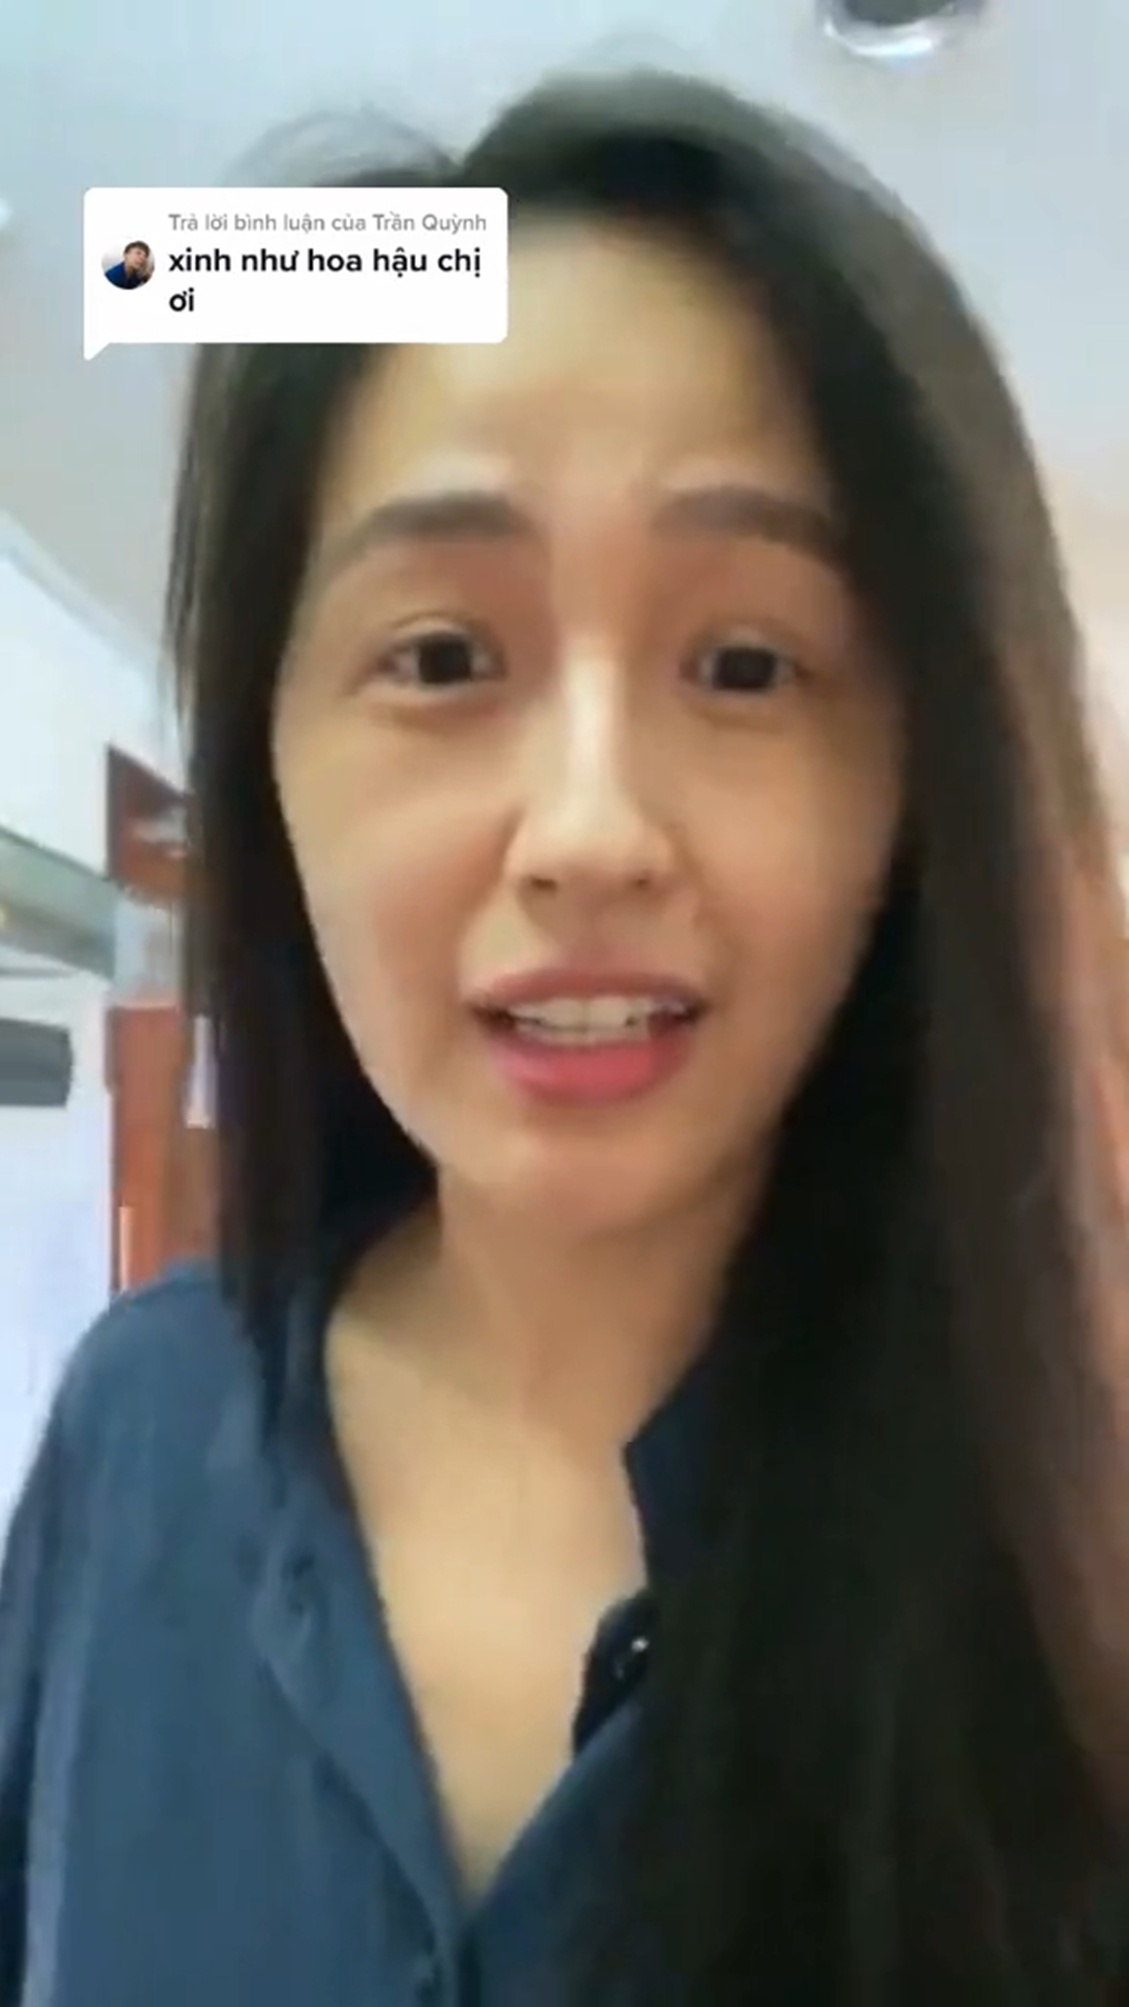 Dũng cảm livestream mặt mộc, Mai Phương Thúy bị chê già như bà cô U60, hoa hậu đáp trả ra sao? - 5